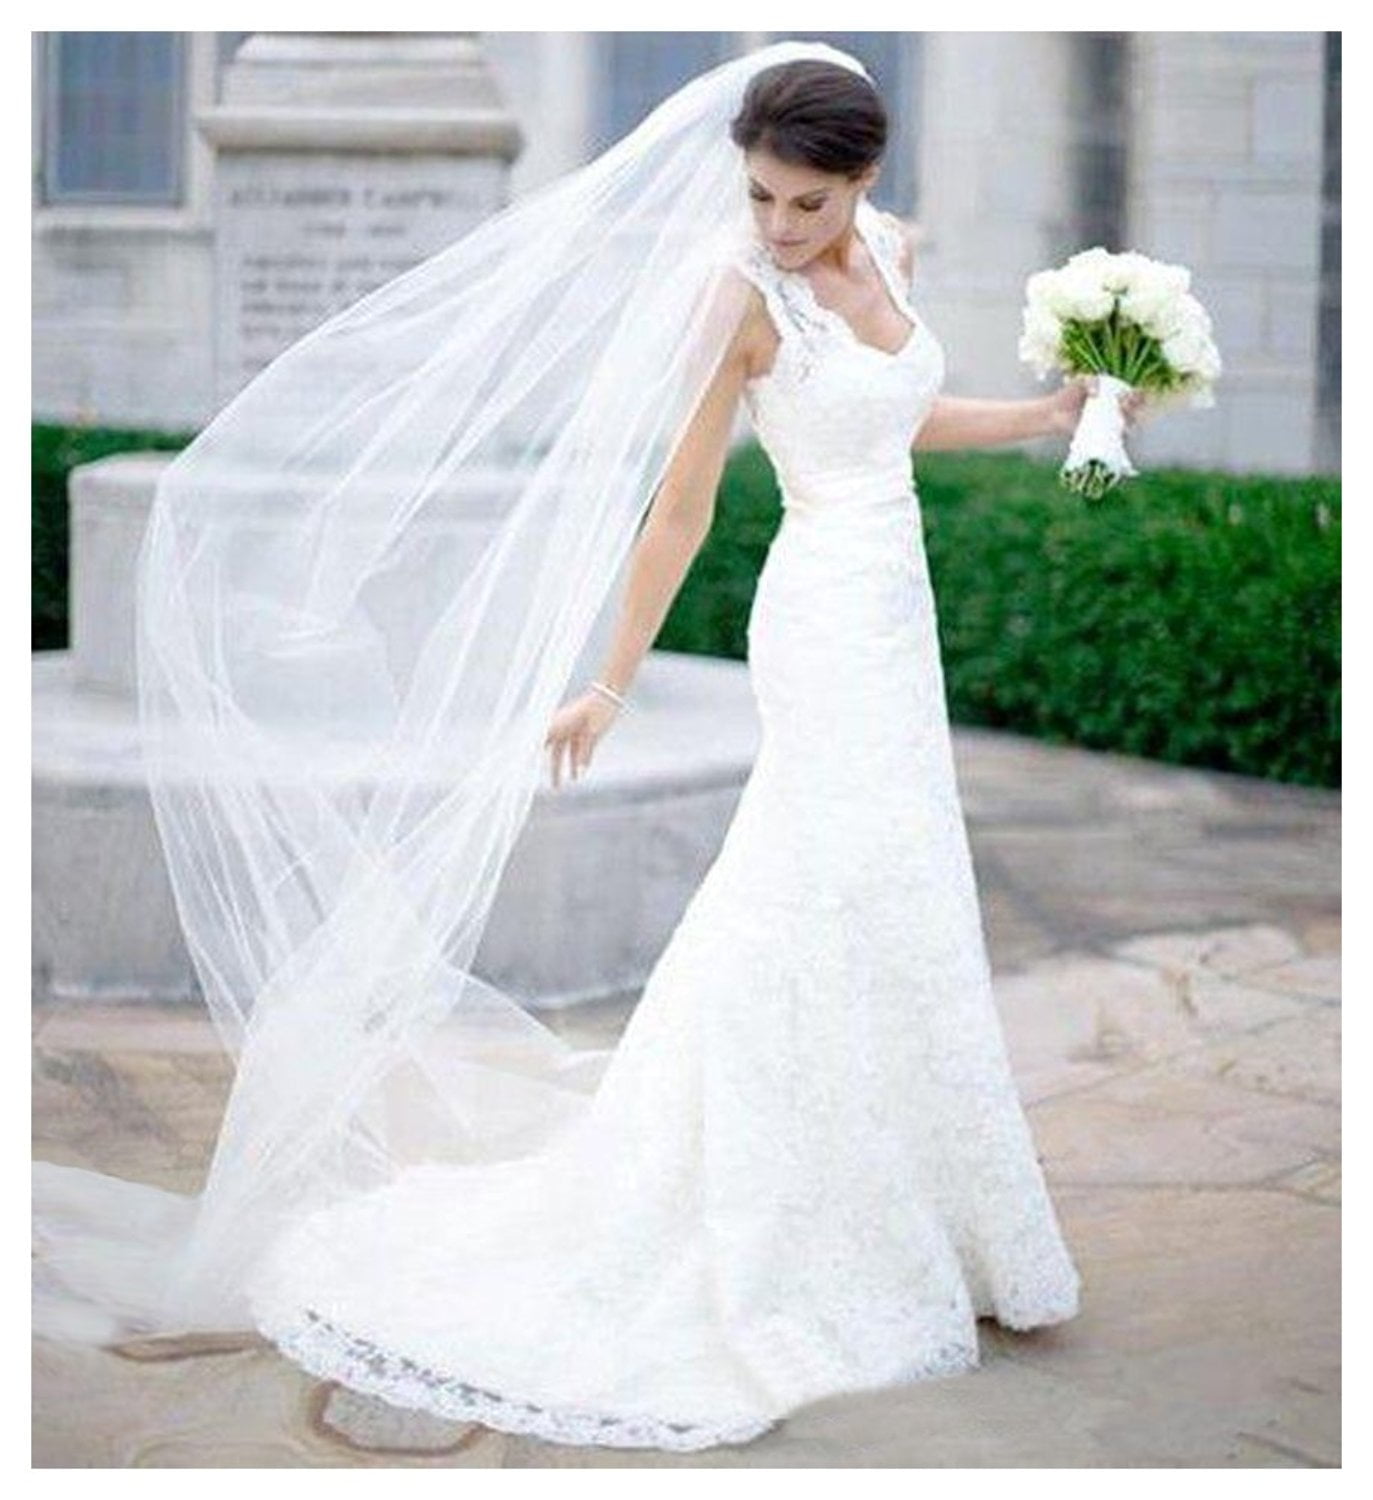 OBRIDAL Custom Wedding Veils - Attachment Options, metal comb, wedding veil  comb